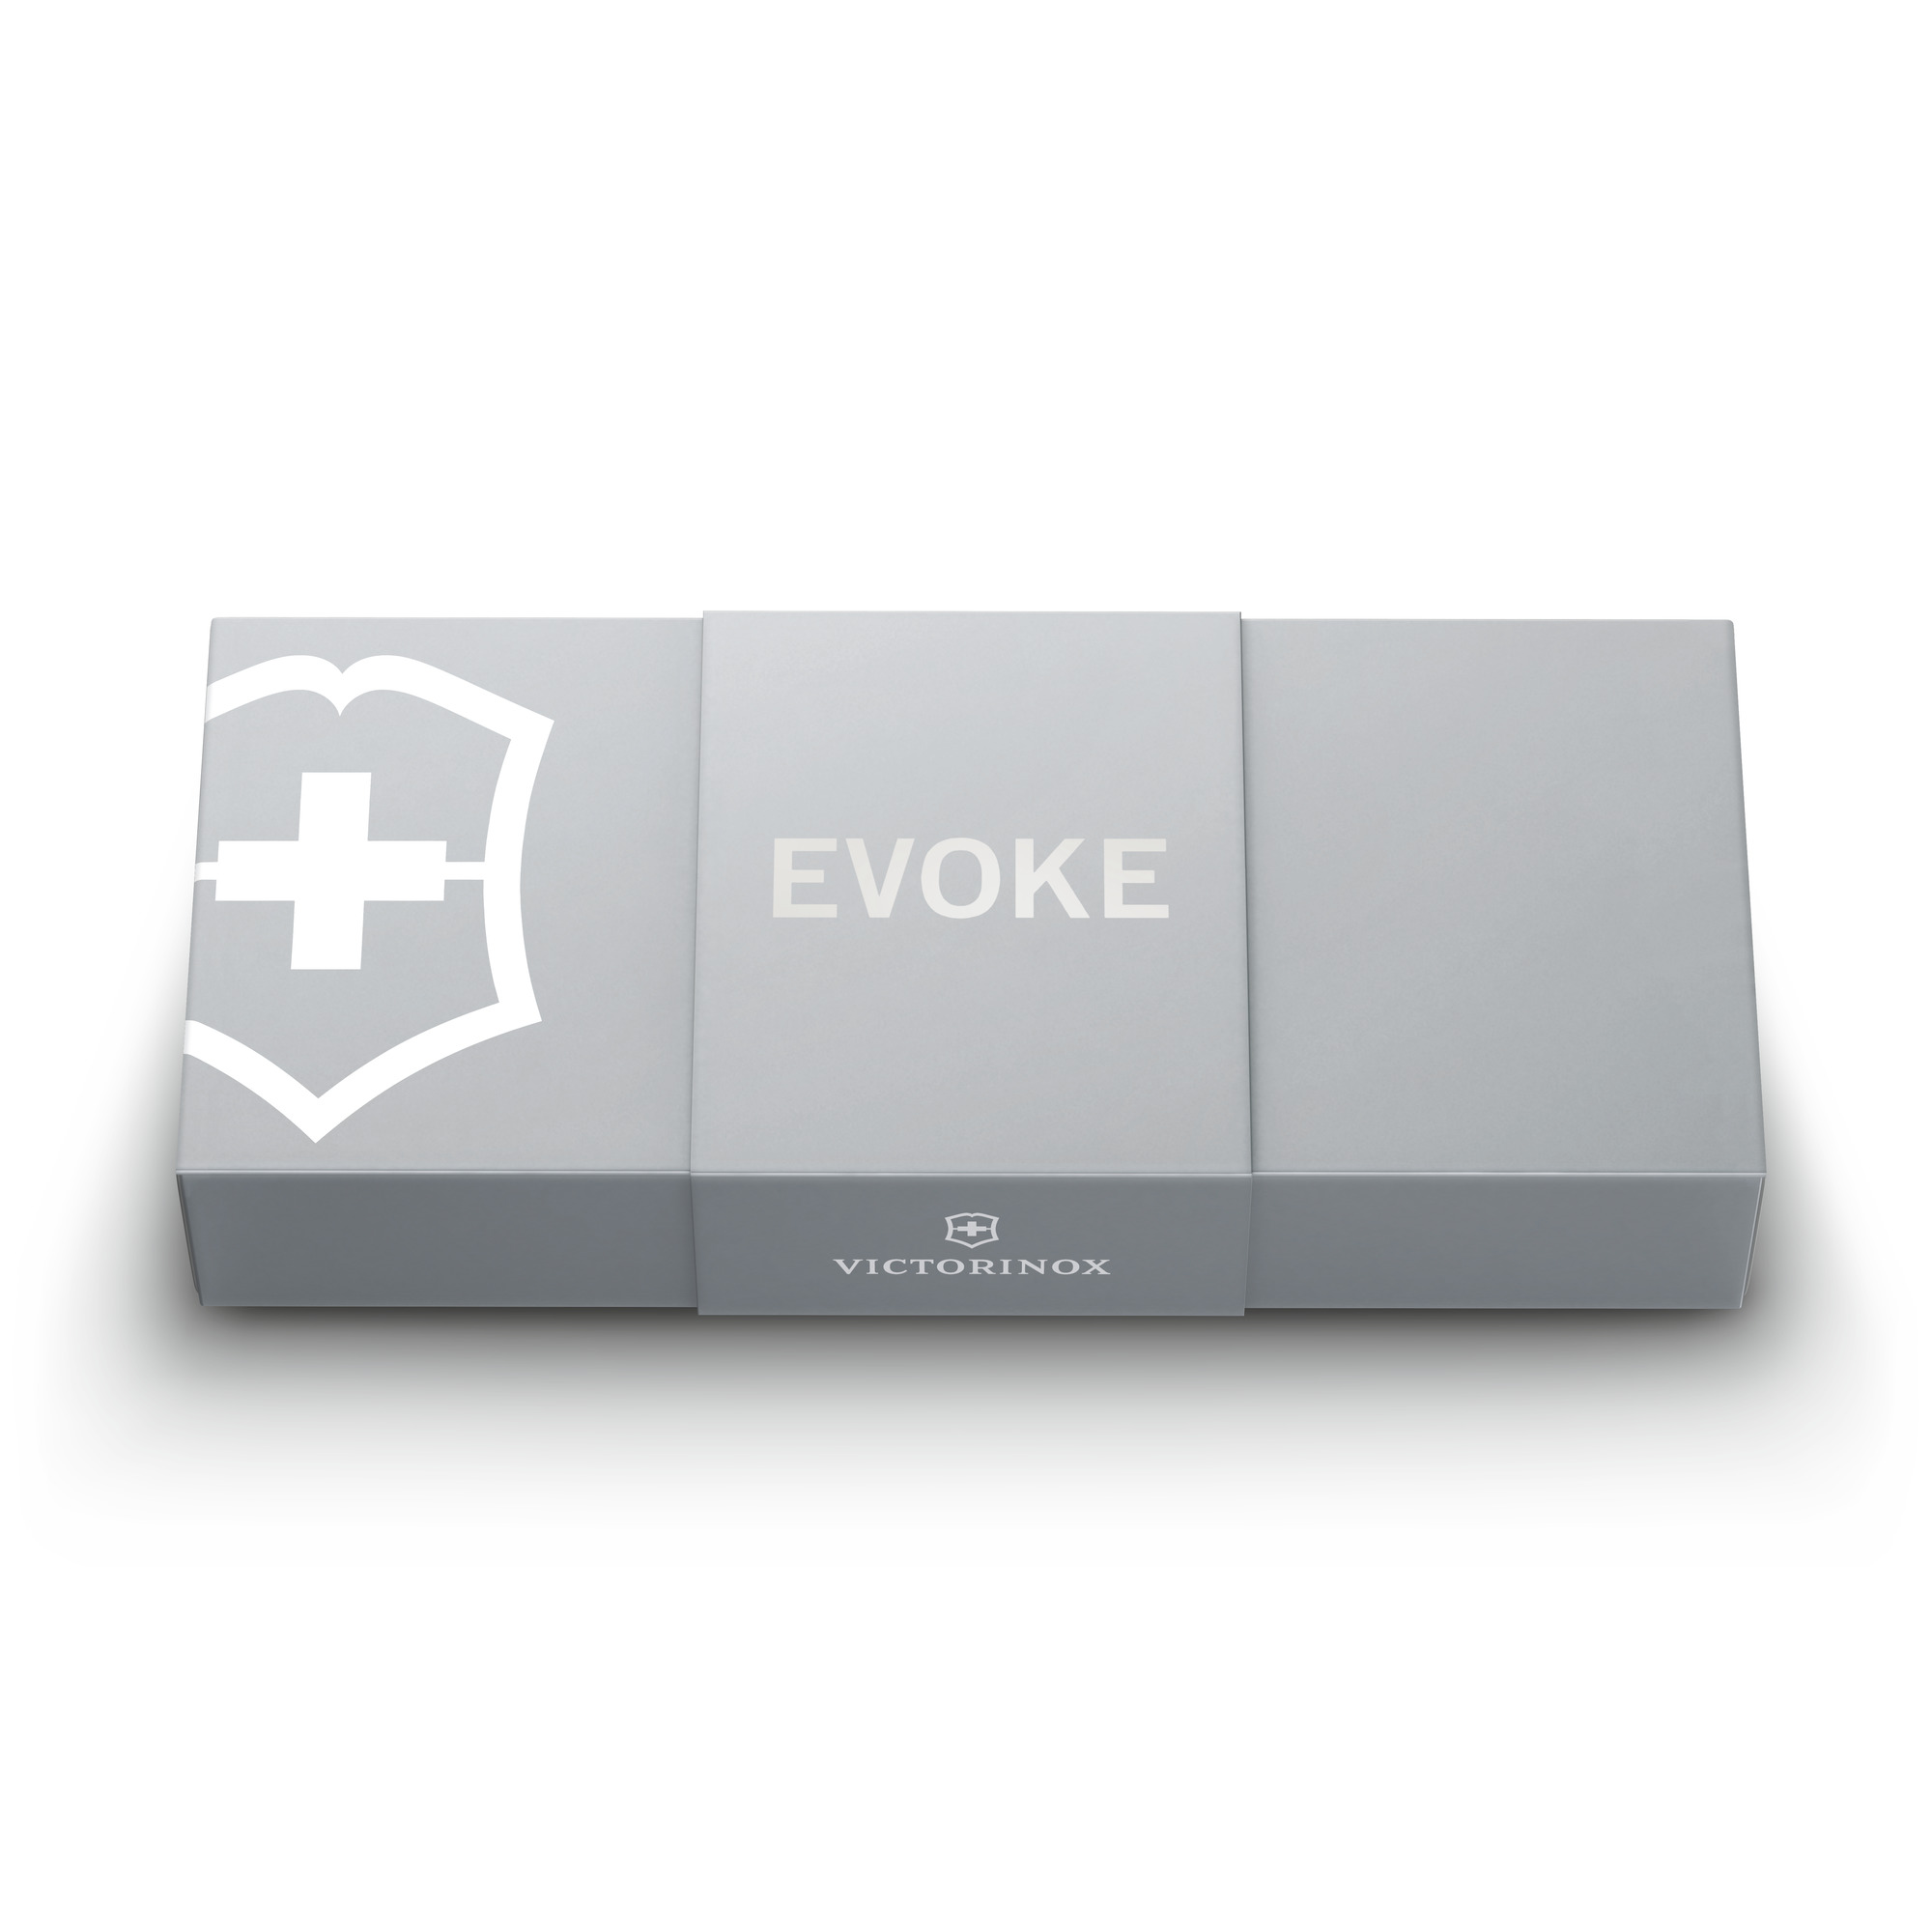 Victorinox Evoke Alox, silver